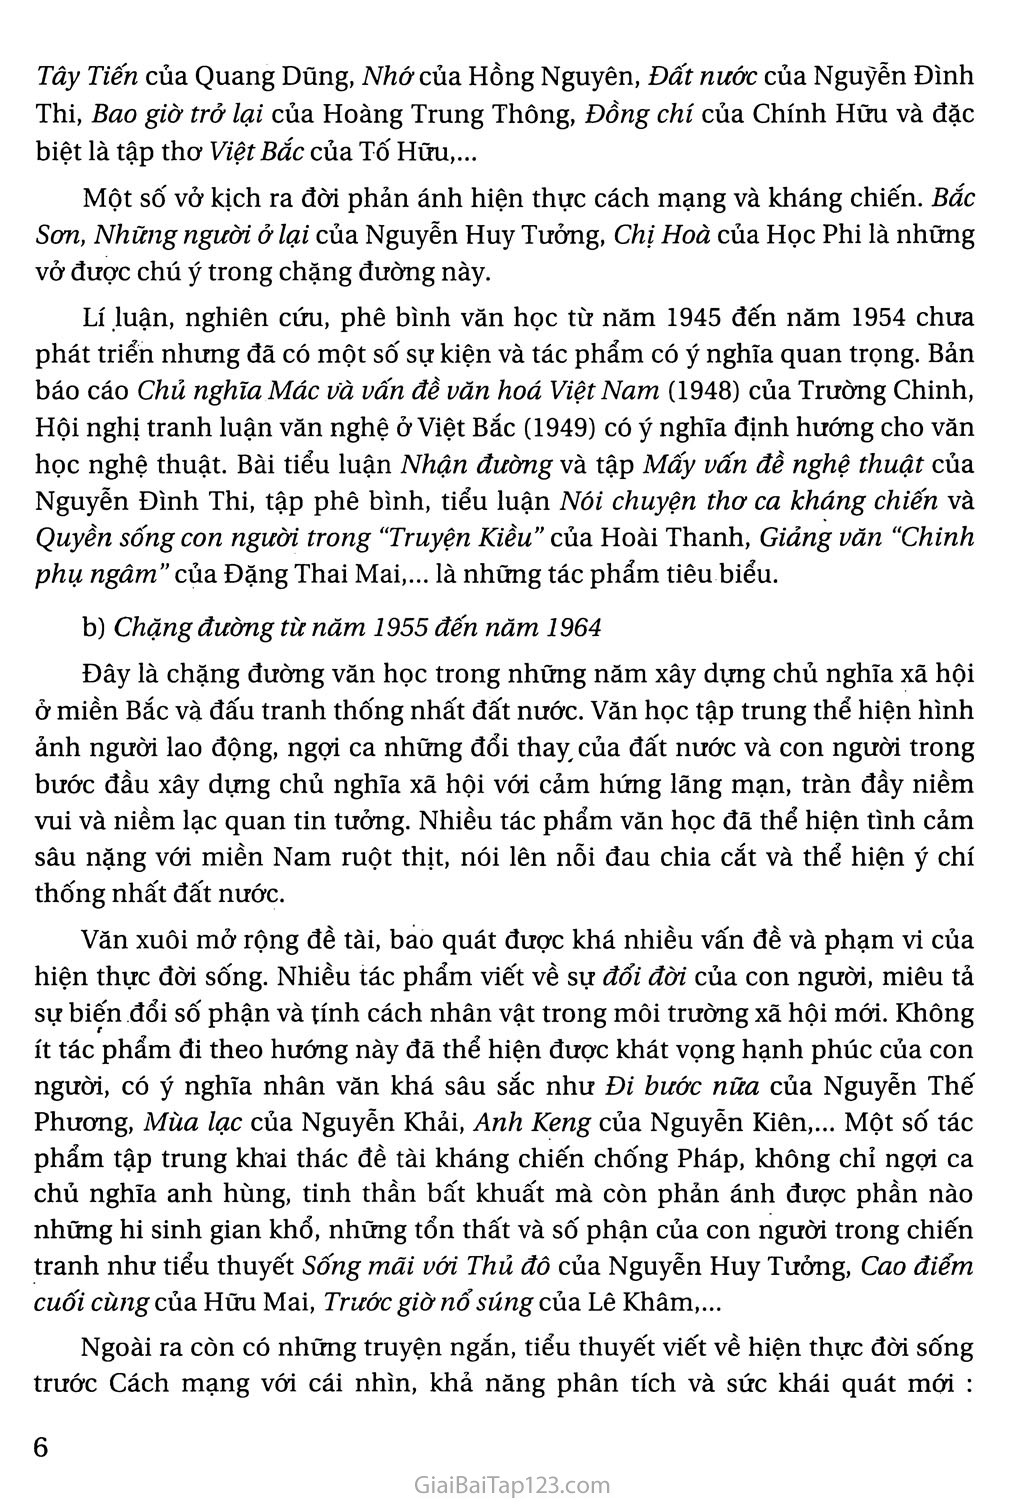 Khái quát văn học Việt Nam từ cách mạng tháng tám năm 1945 đến hết thế kỉ XX trang 4